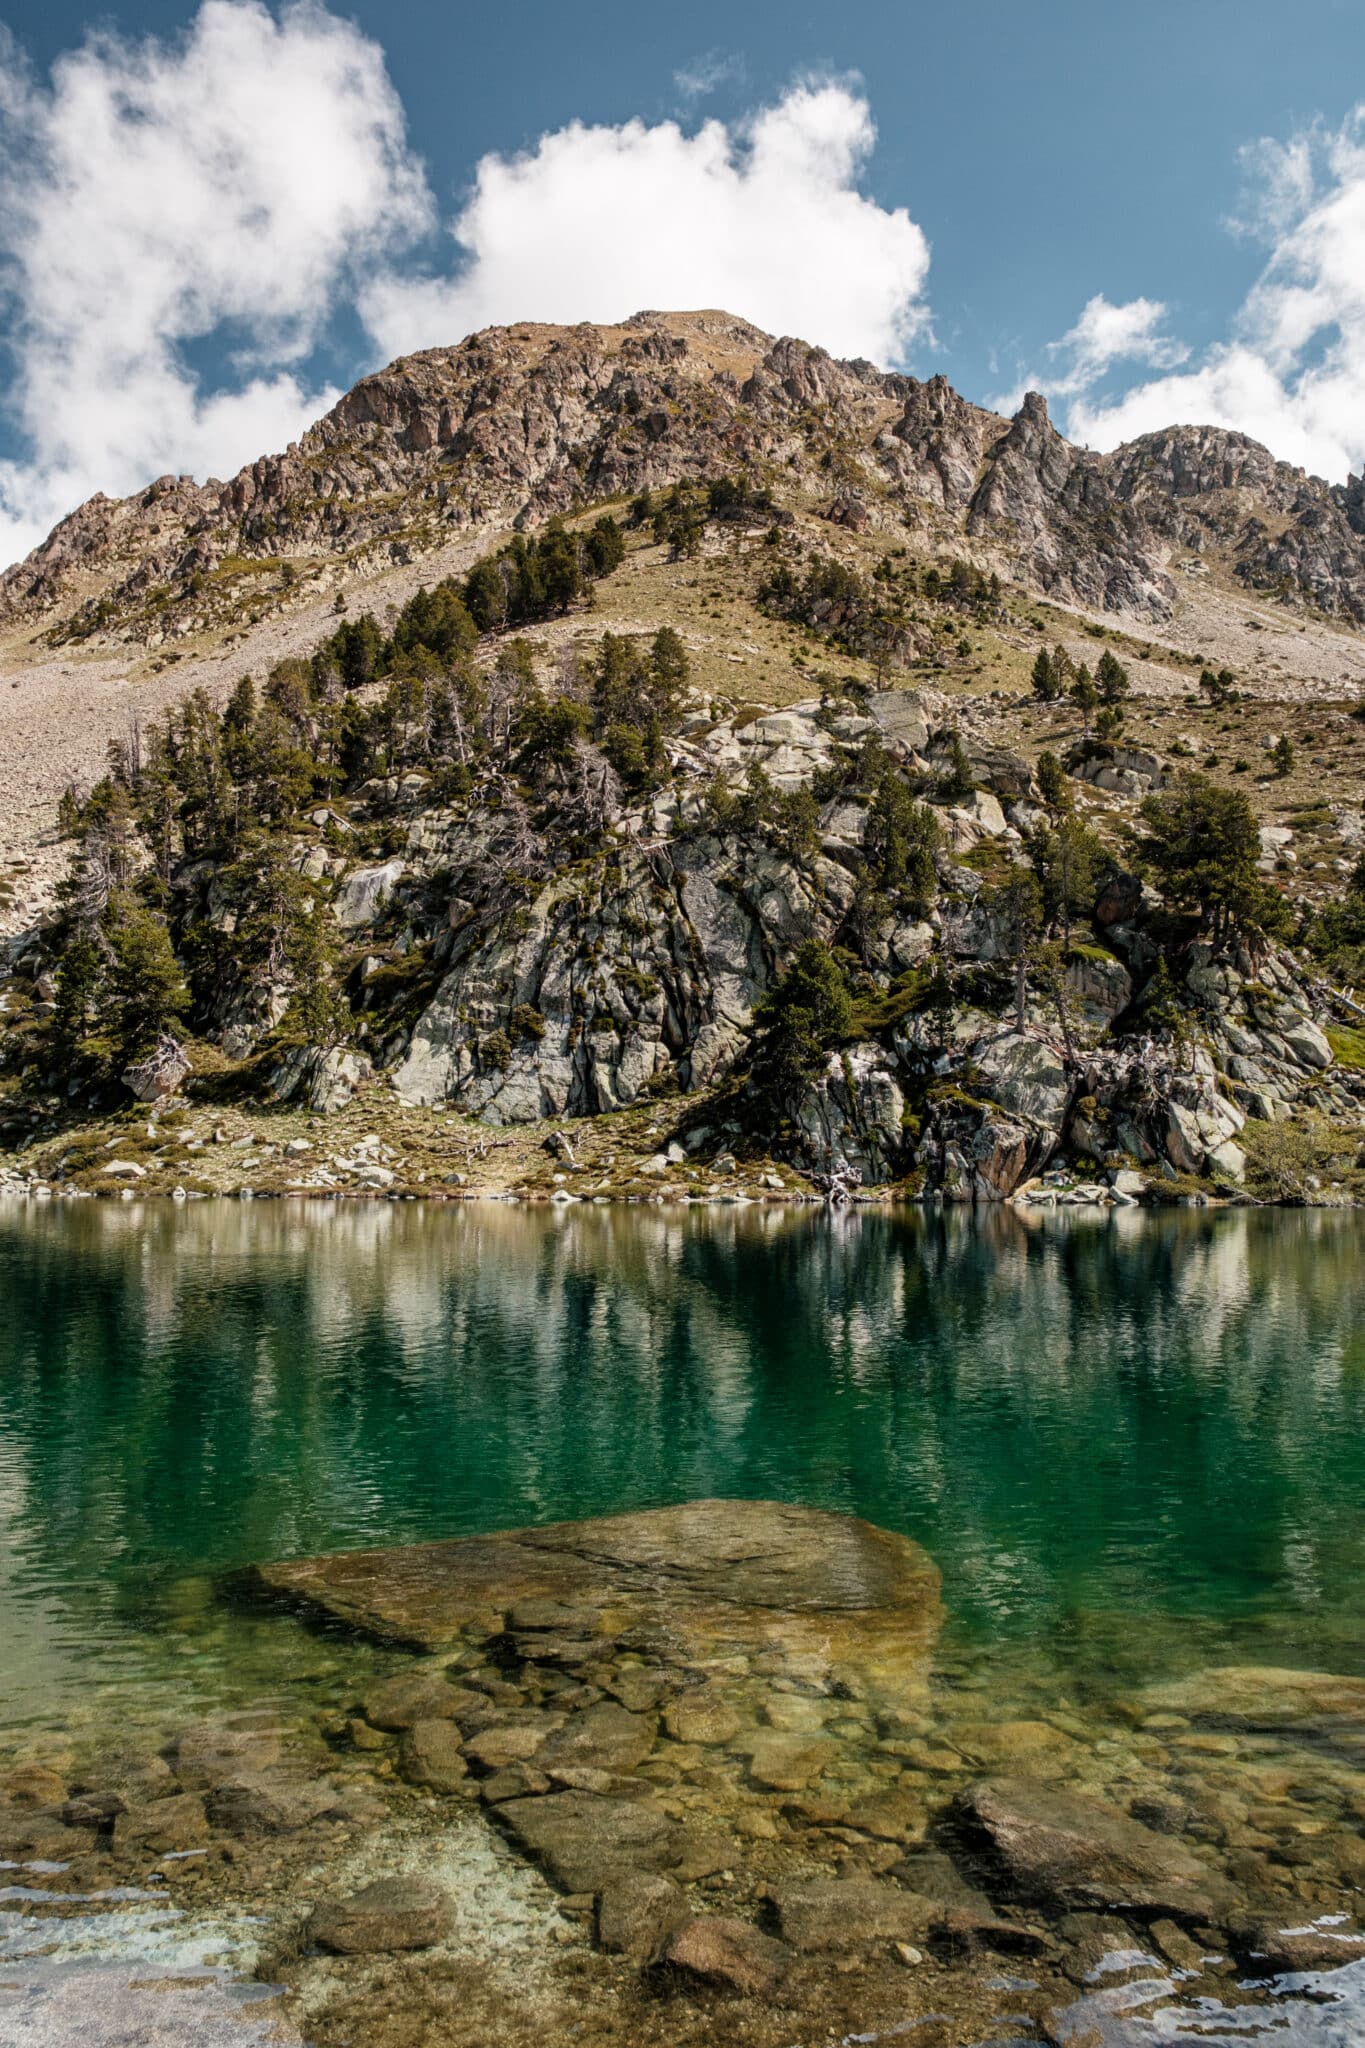 Randonnée dans le massif de Néouvielle lac turquoise pic de bastan